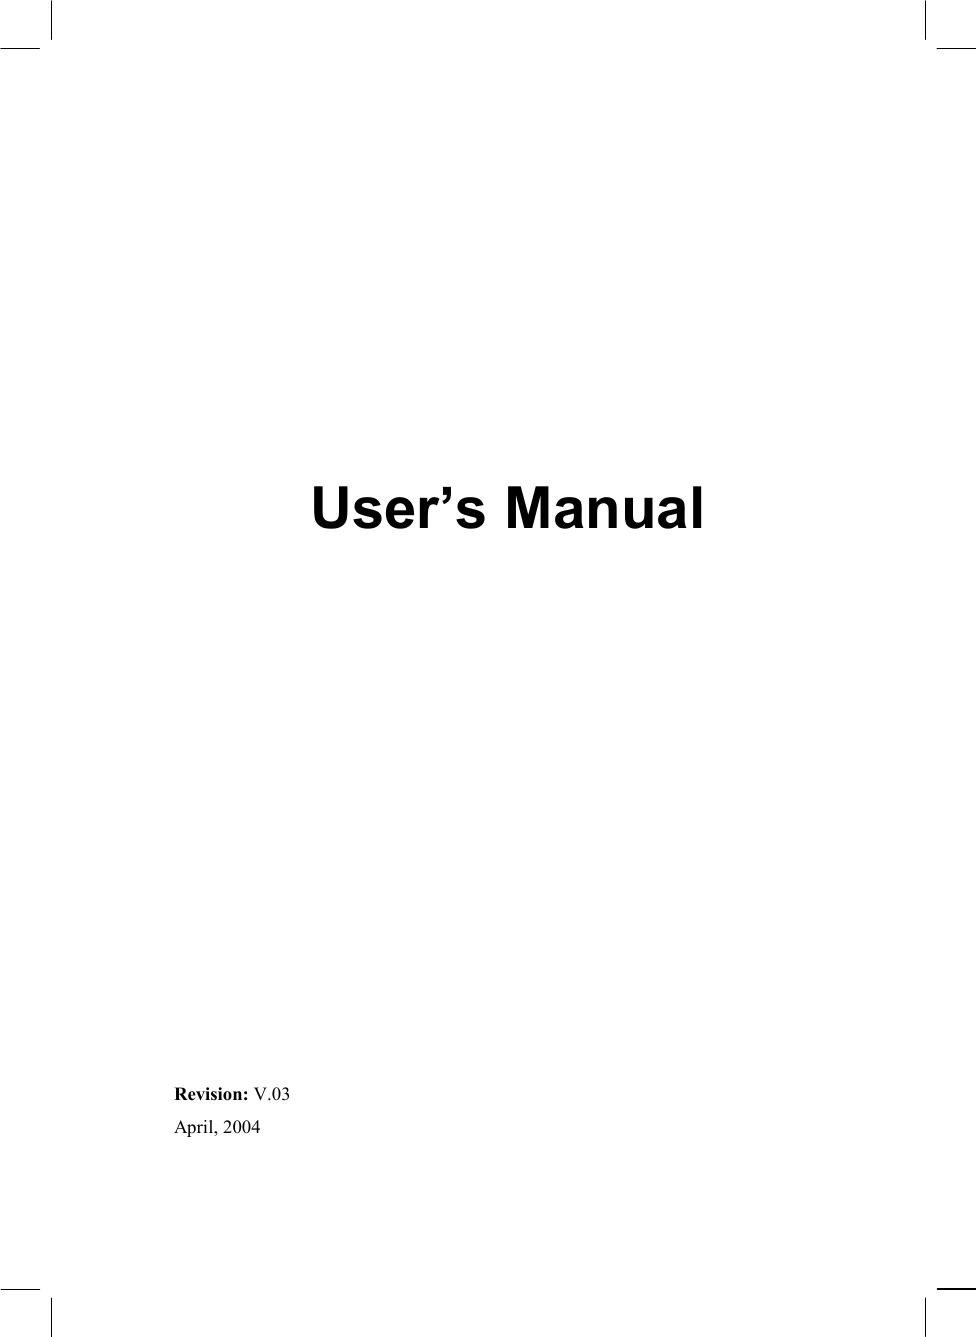               User’s Manual                 Revision: V.03 April, 2004  